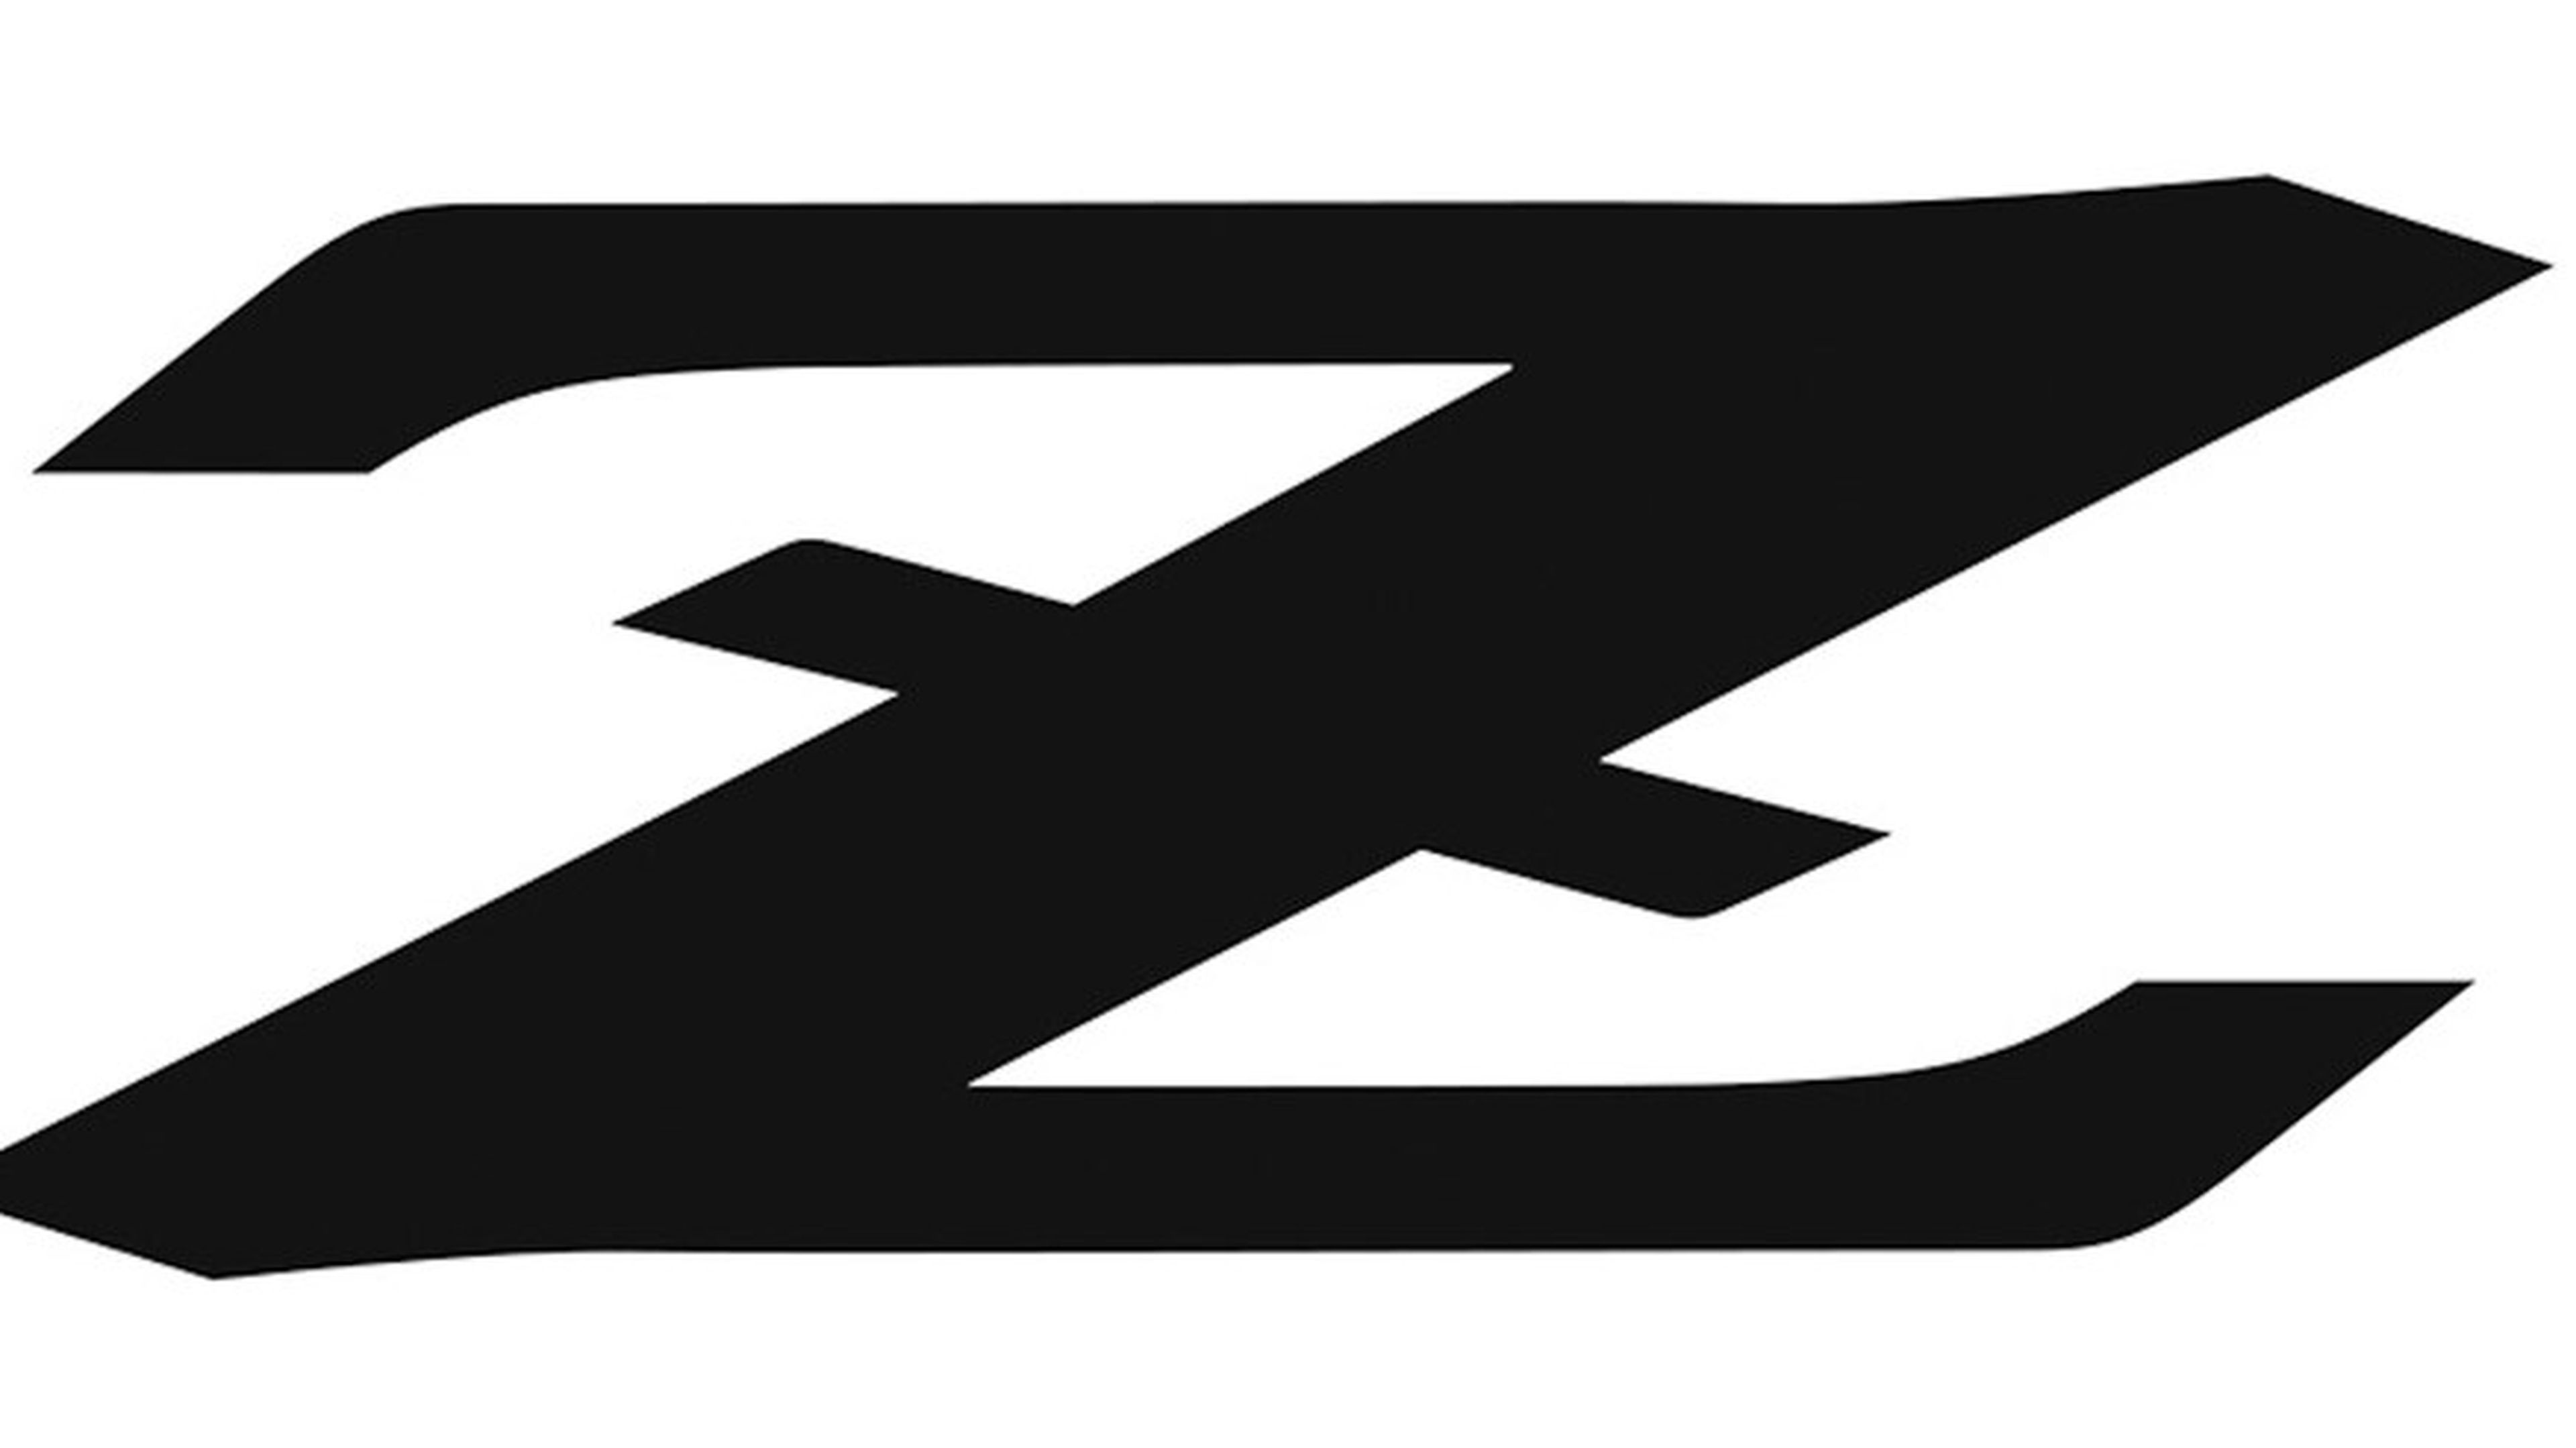 Nissan Z logo